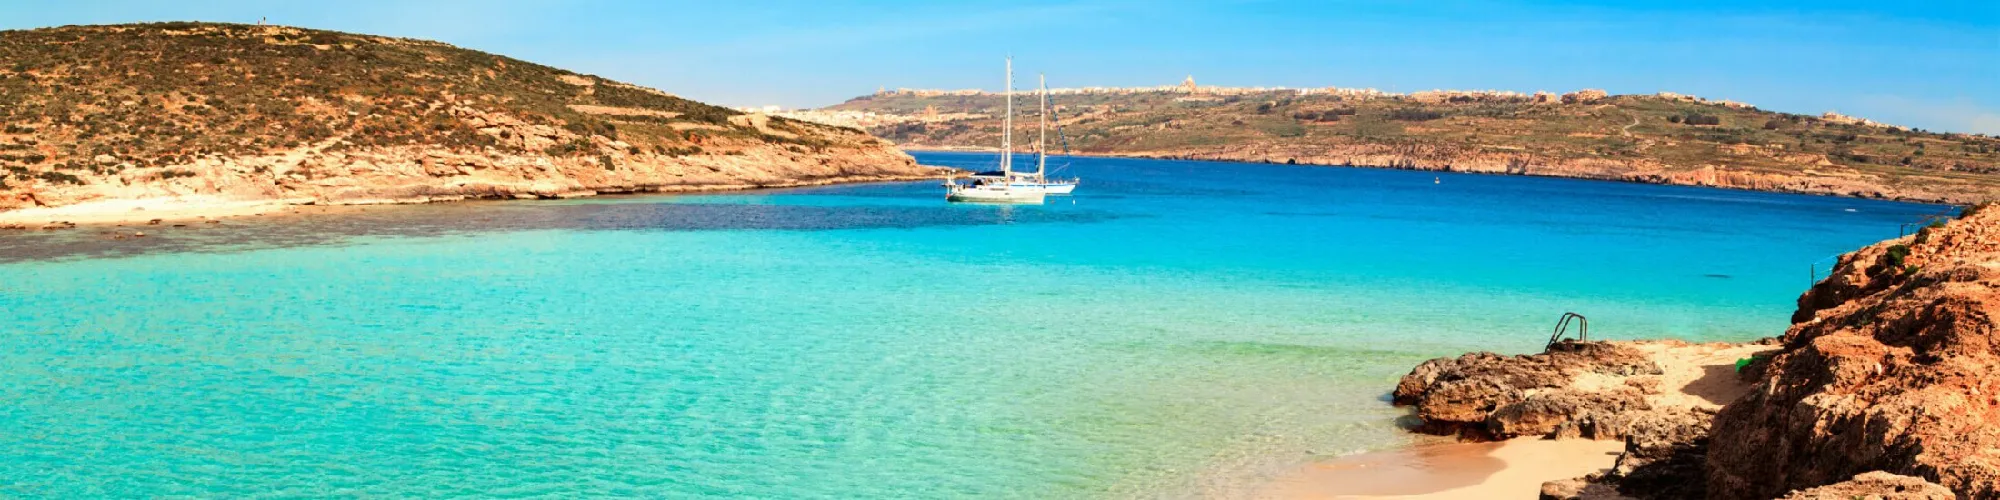 Urlaub auf Malta background image